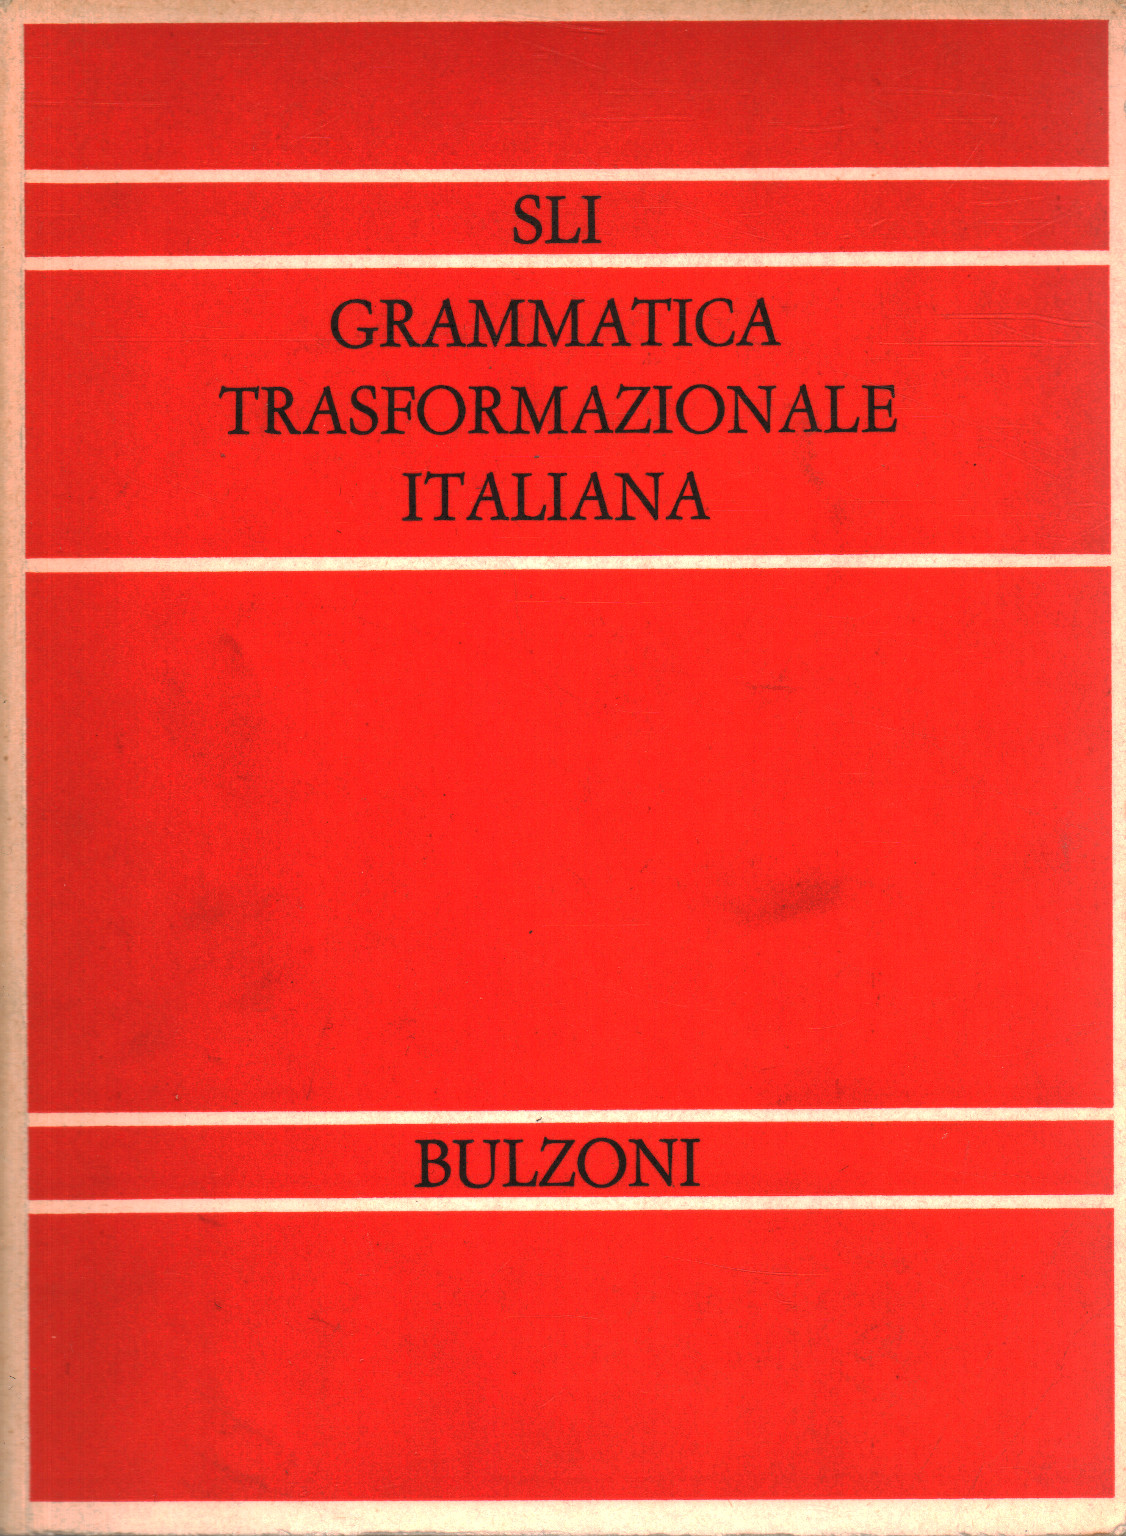 Grammatica trasformazionale italiana, s.a.